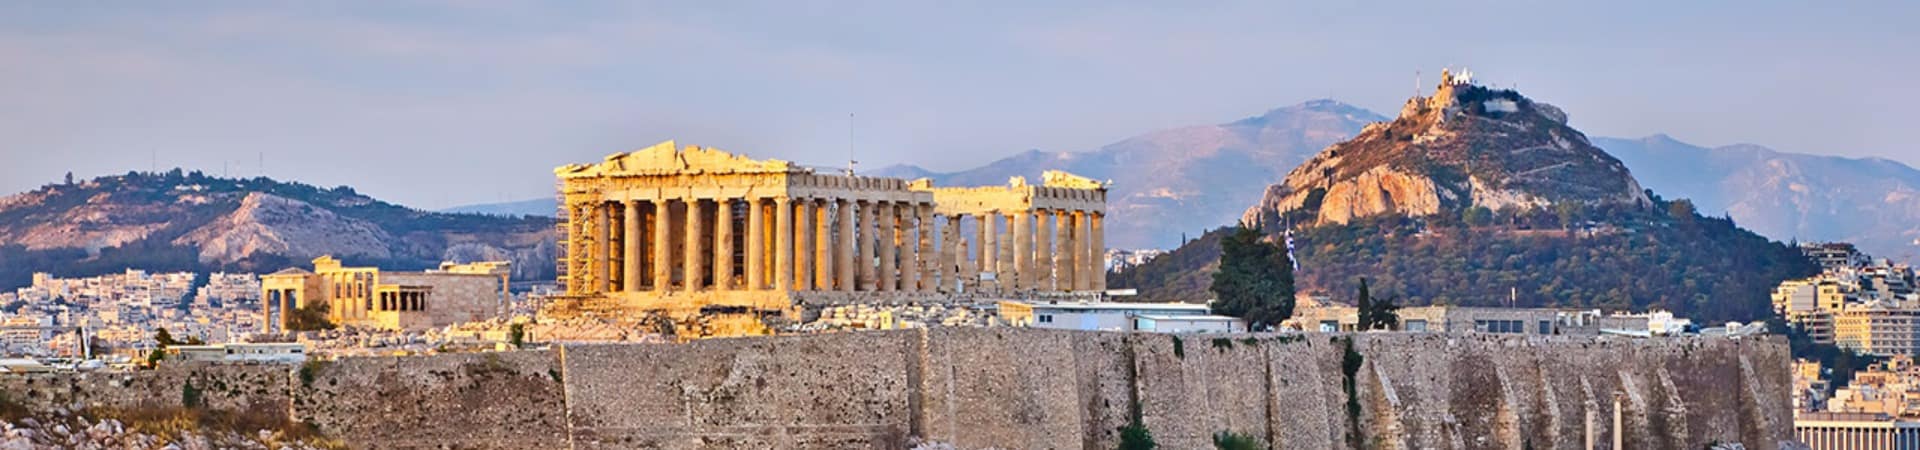 Vista do Parthenon - Atenas, Grécia.